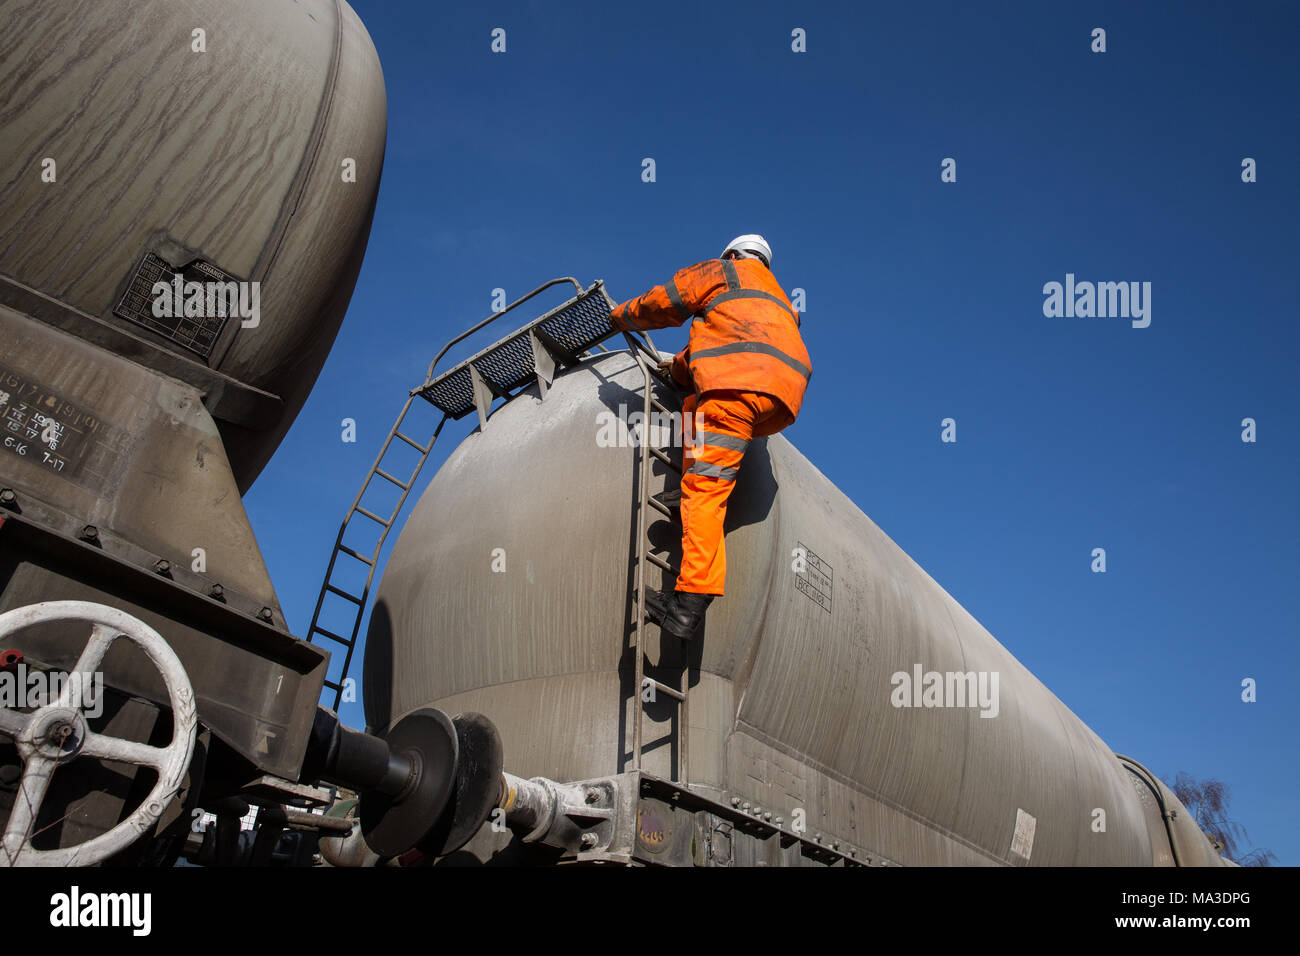 Eine Eisenbahn Wartung Arbeiter tragen Hi viz Kleidung klettern eine Leiter auf eine Profilschiene Tanker das obere Deck während Arbeiten in großer Höhe zu prüfen. Stockfoto